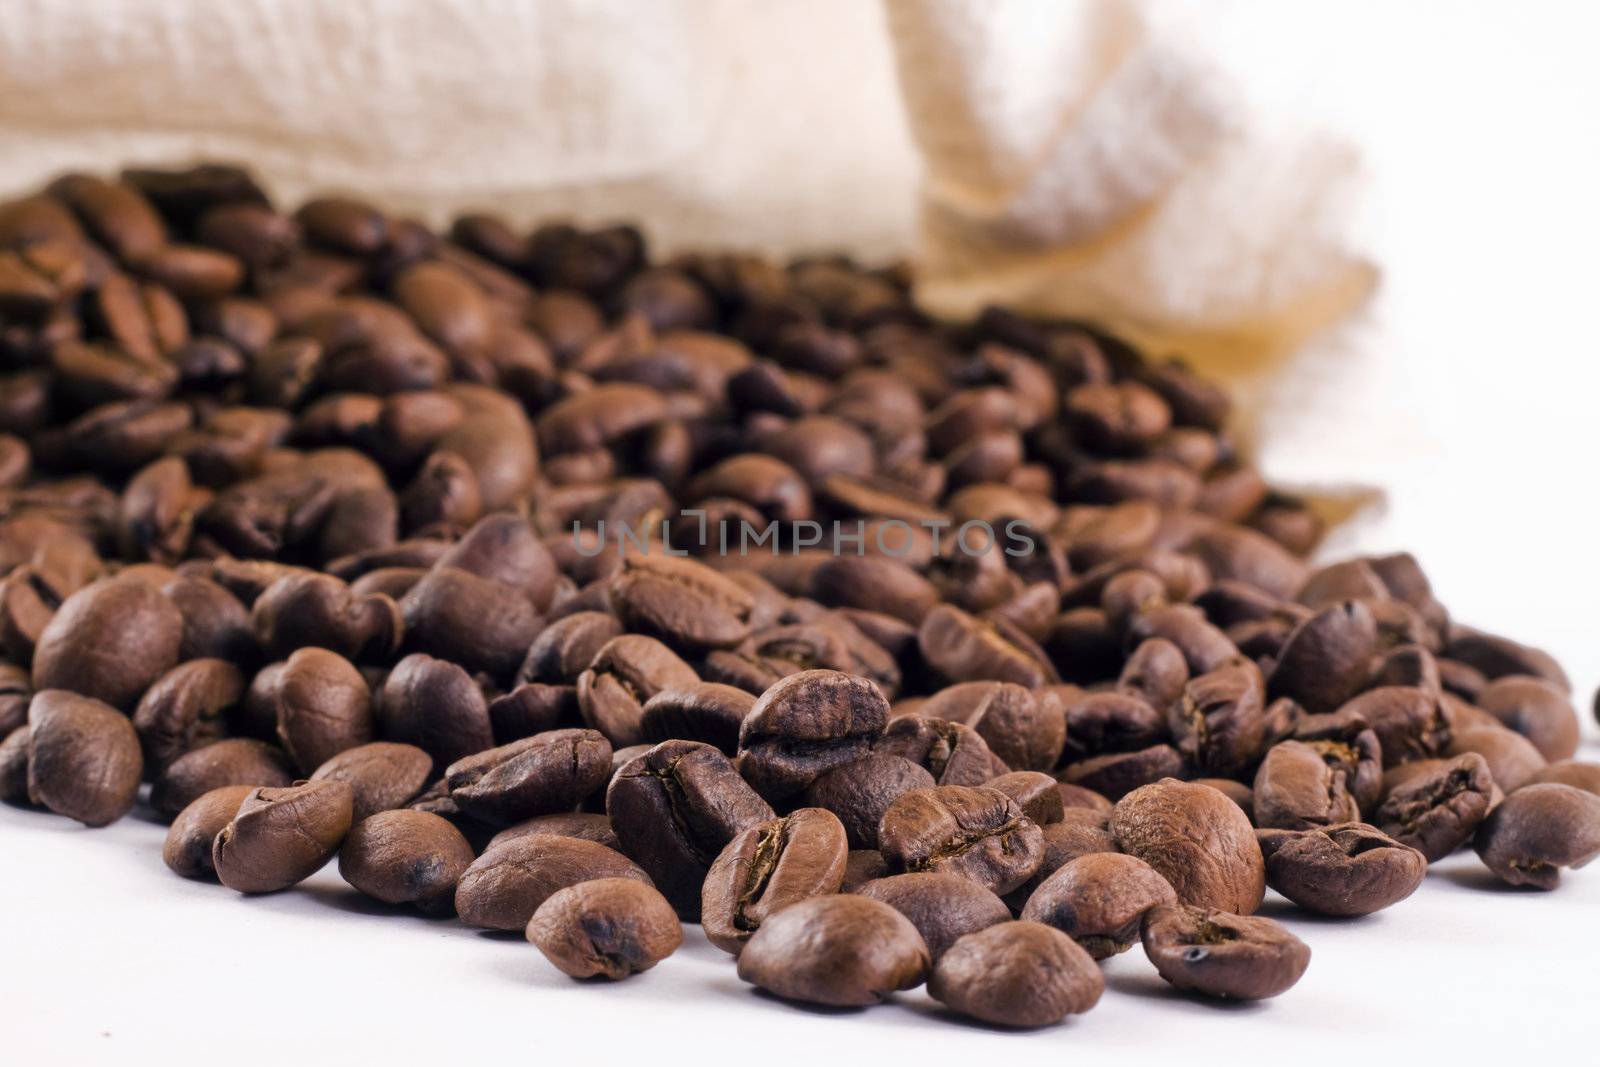 Coffee beans by Jaykayl